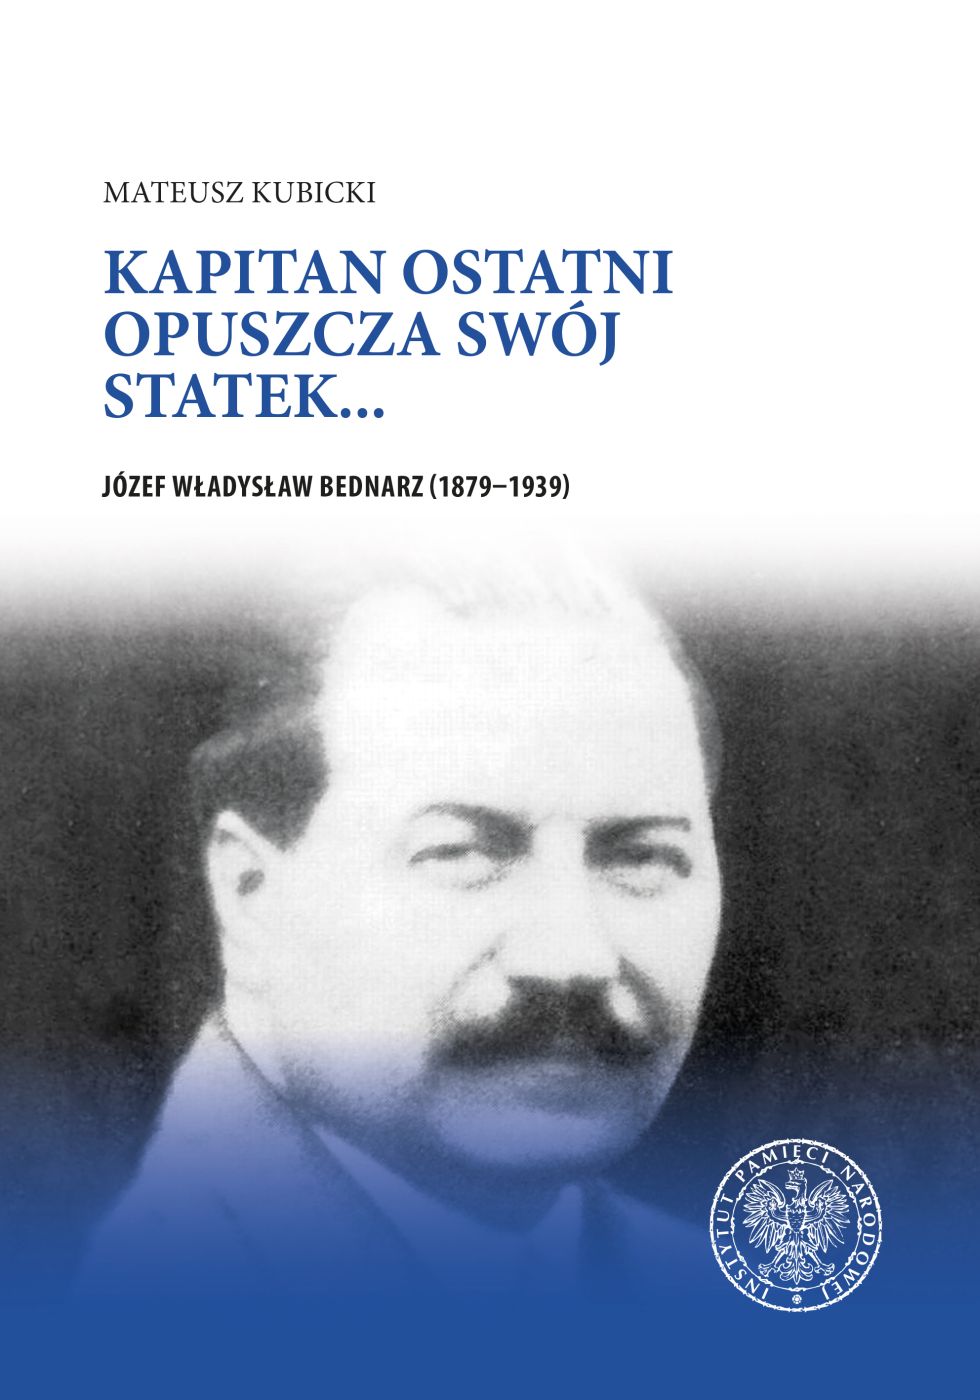 Kapitan ostatni opuszcza swój statek… Józef Władysław Bednarz (1879-1939)